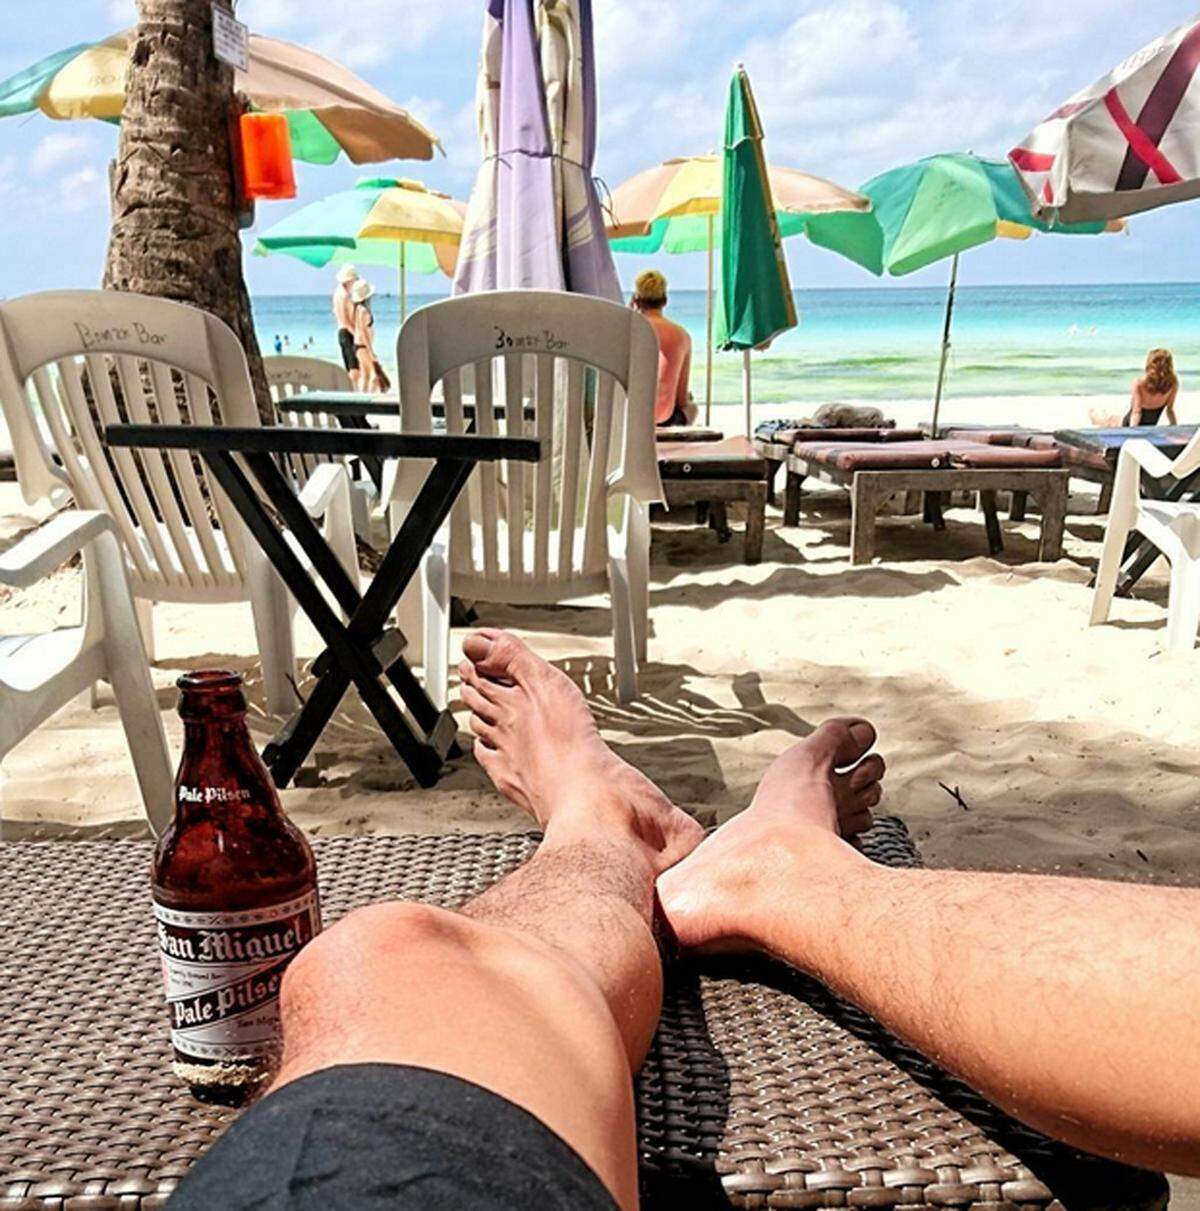 Cocktails und kaltes Bier schmecken in der Hitze natürlich noch besser. Übertreiben sollte man es aber nicht, ein Vollrausch am Strand tut niemanden gut.